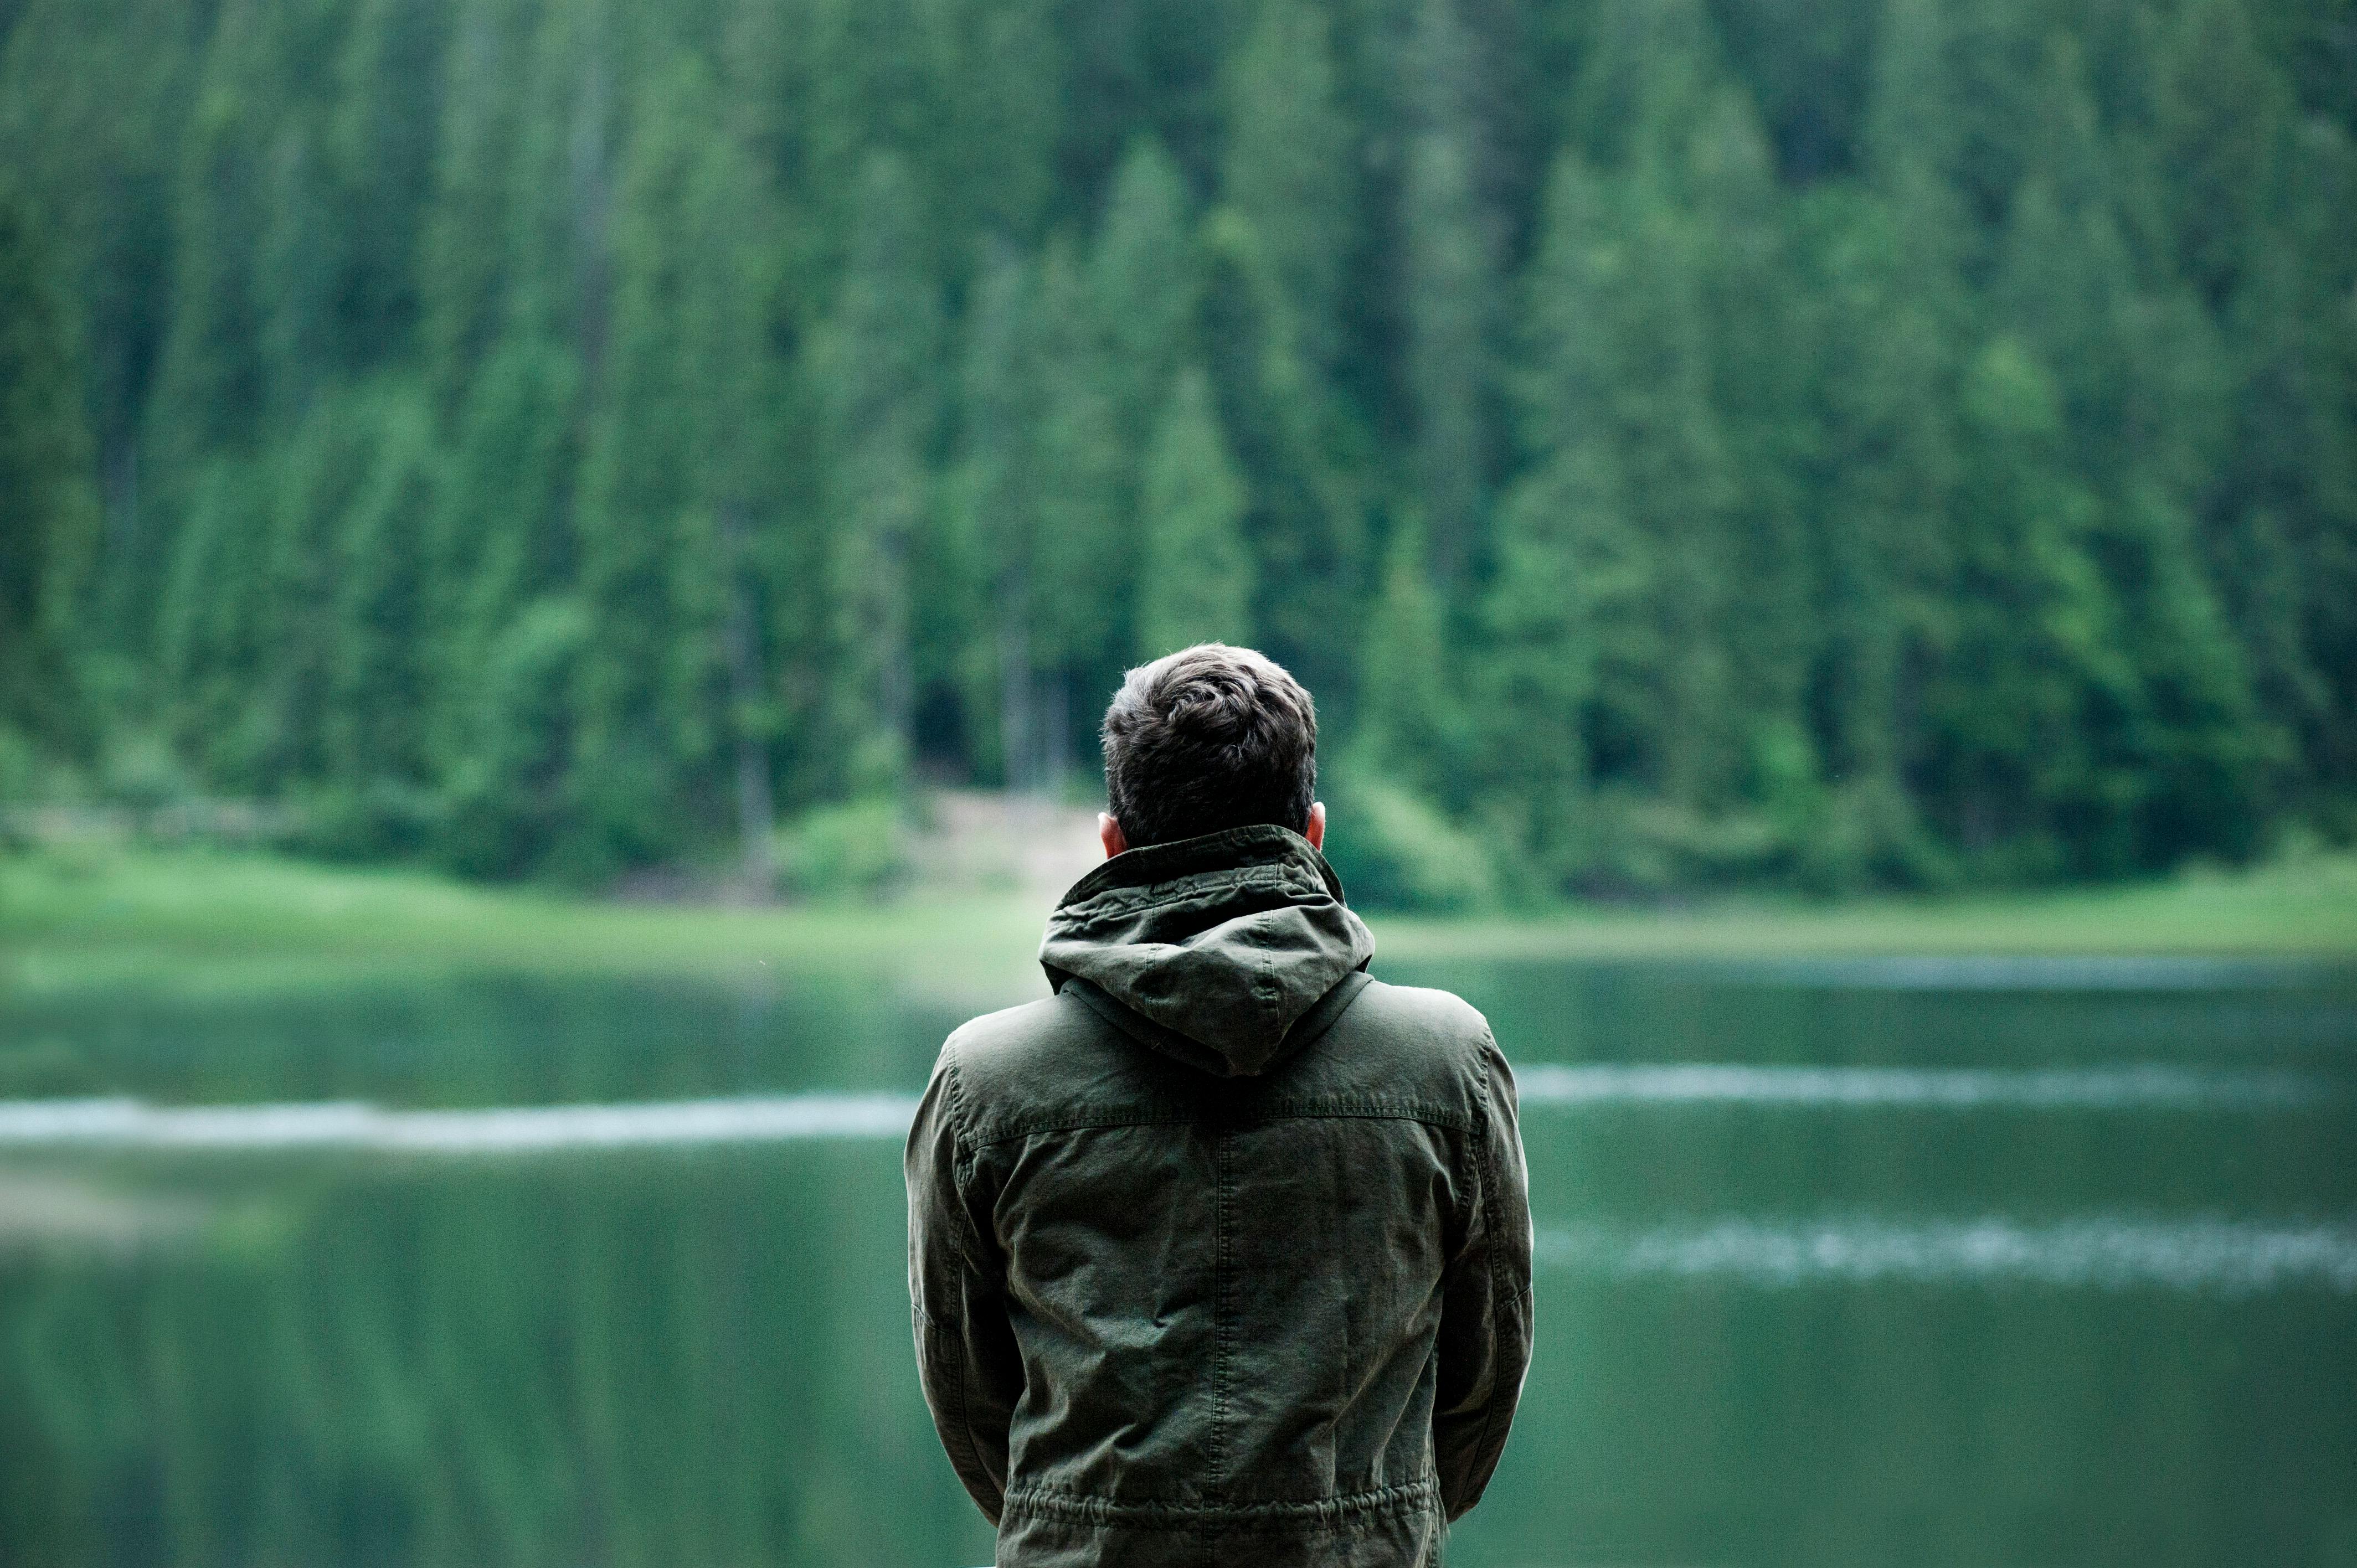 Mann vor einem See. | Quelle: Pexels